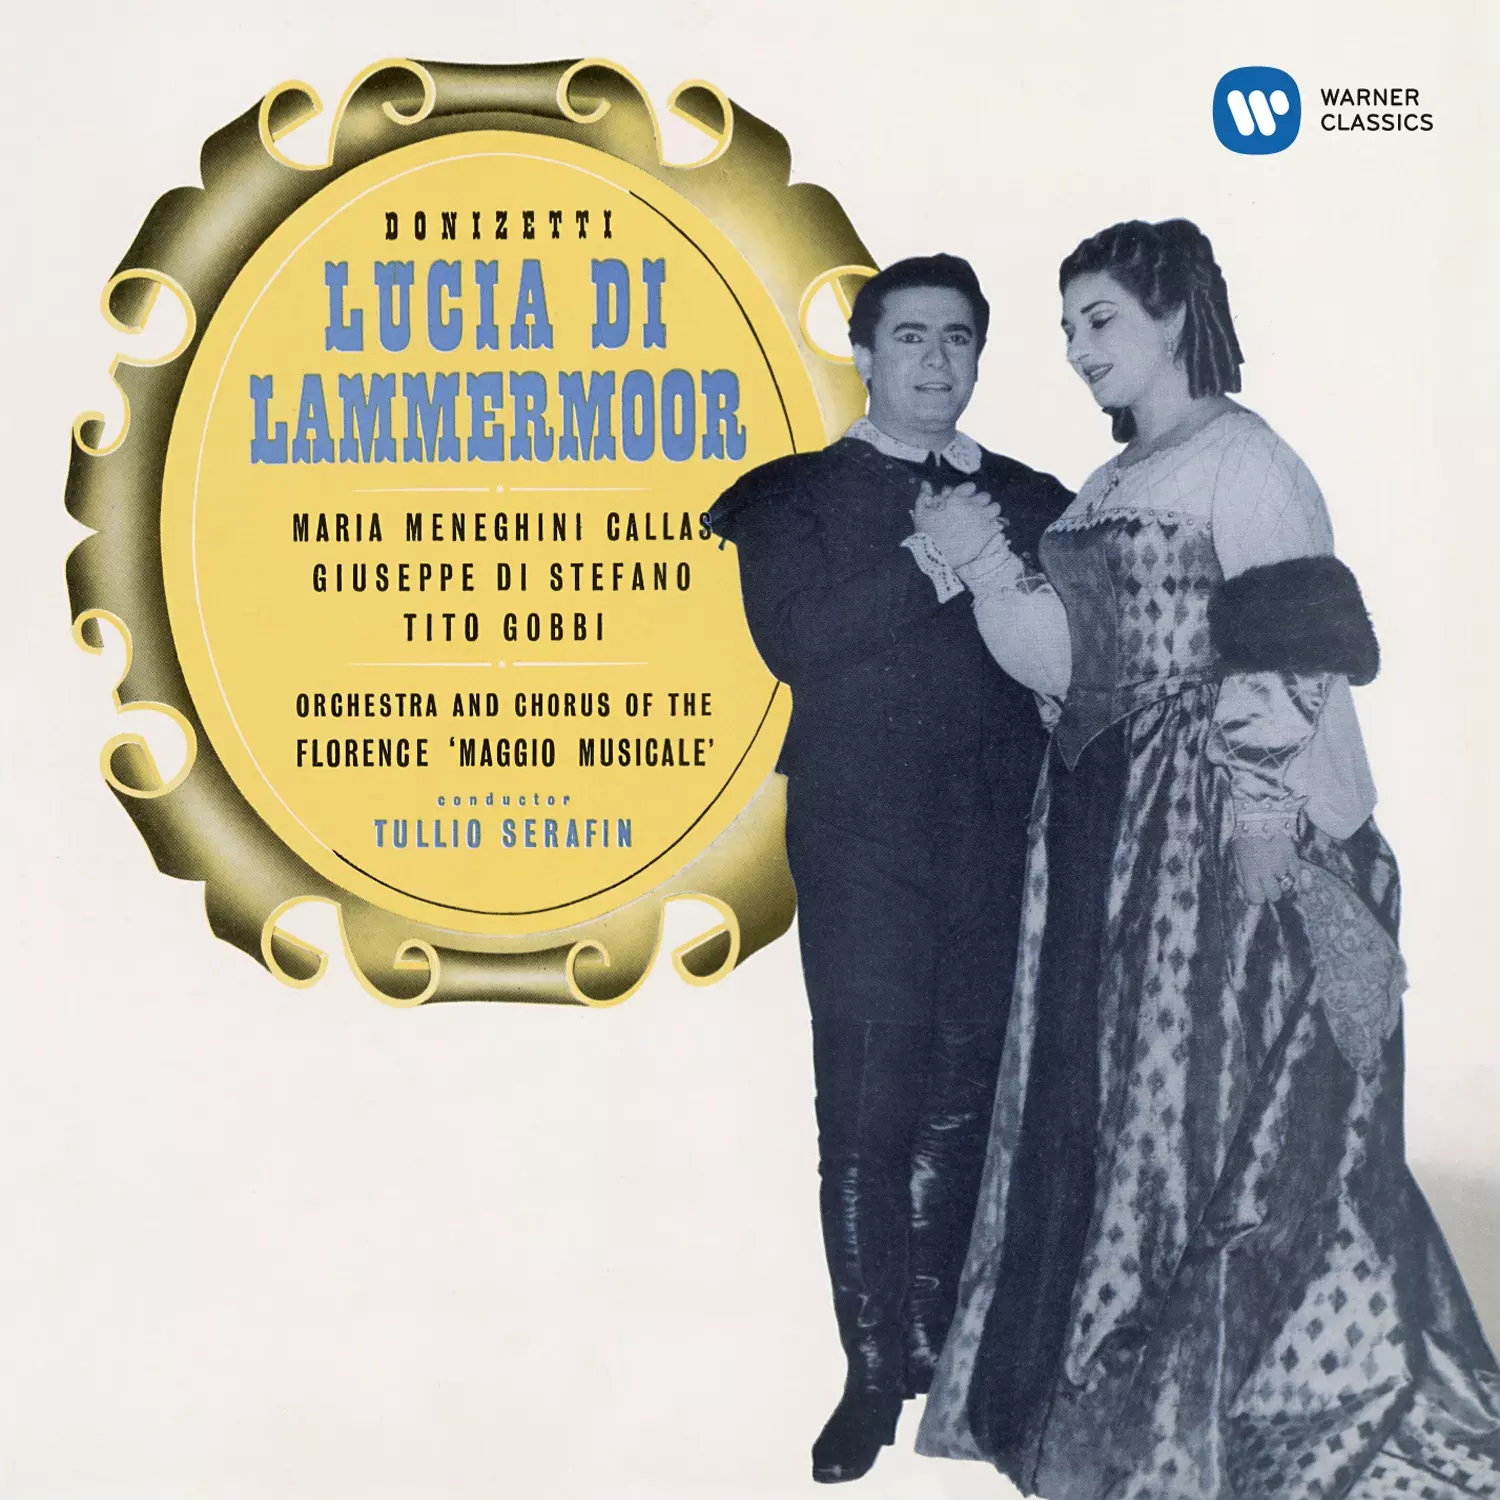 Donizetti: Lucia di Lammermoor (1953 - Serafin) - Callas Remastered